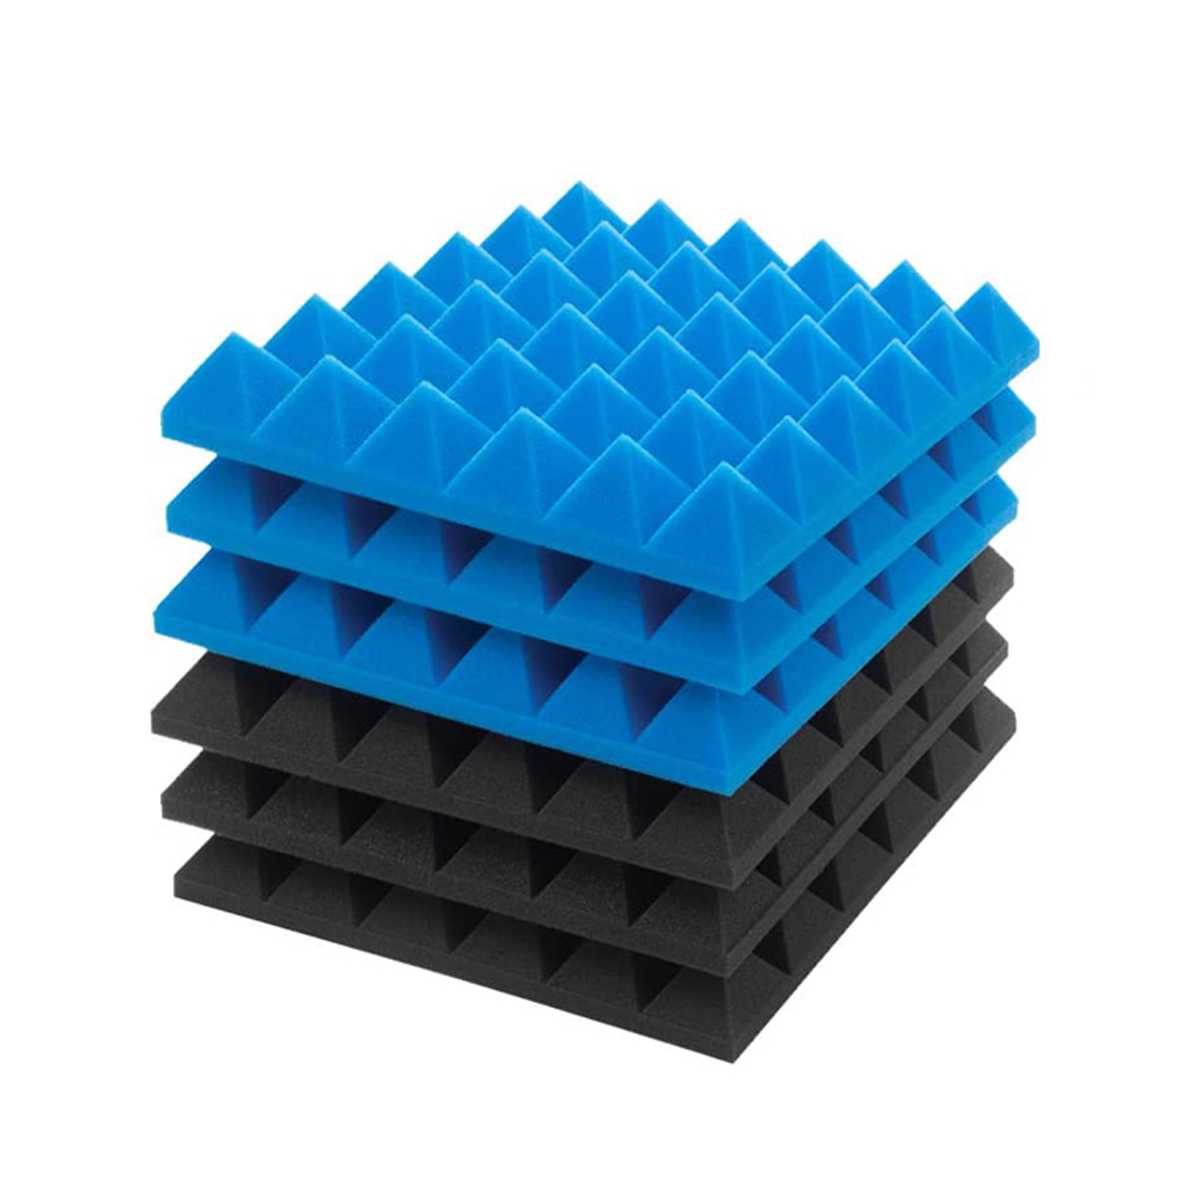 6Pcs-Acoustic-Foams-Studio-Soundproofing-Wedges-Tiles-Black--Blue-12x12x2inch-1749892-10